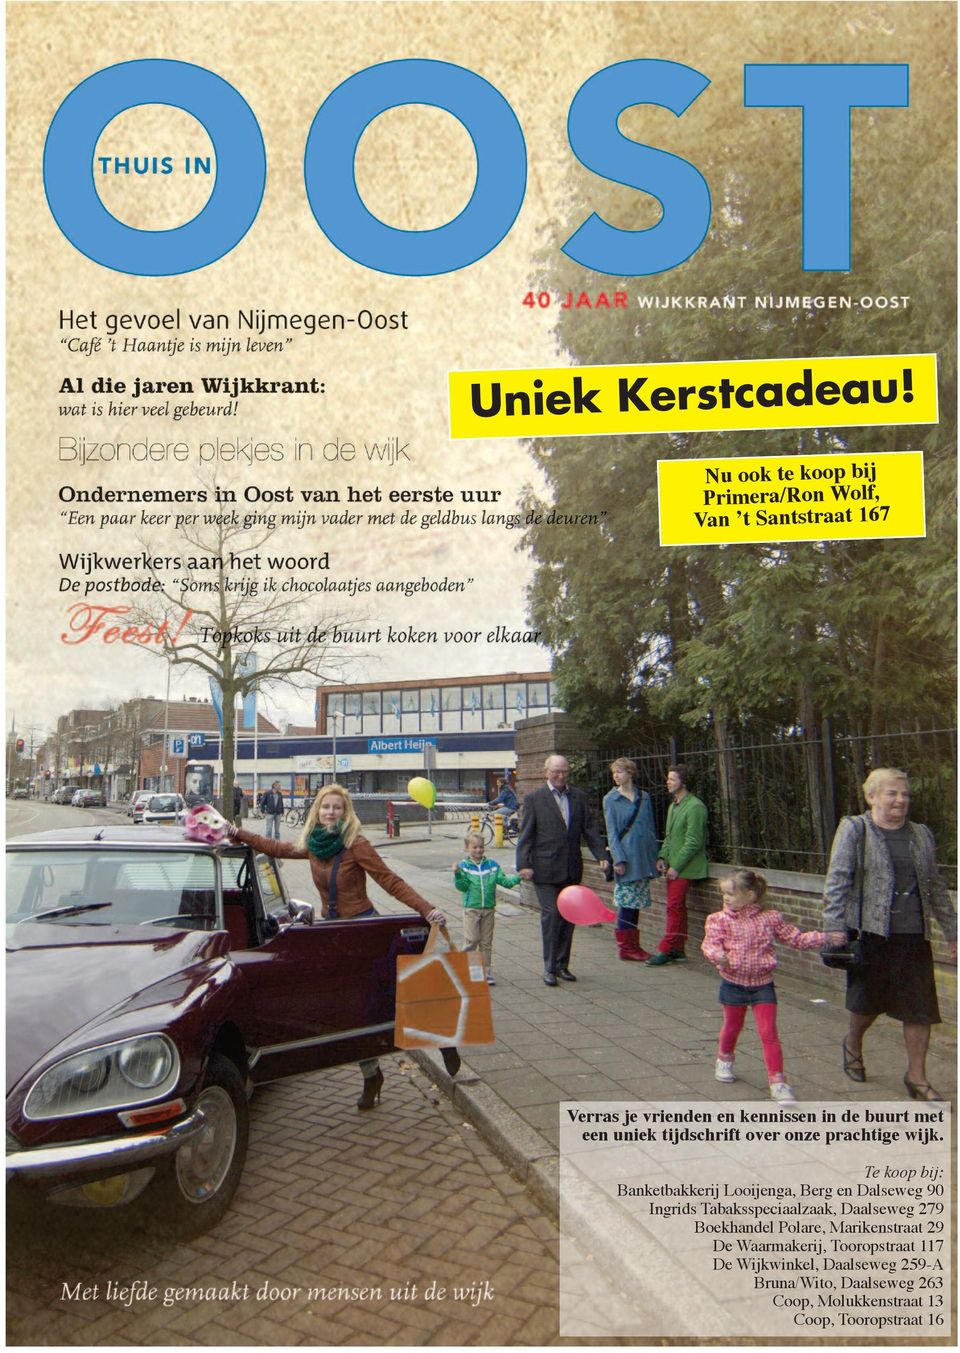 uniek tijdschrift over onze prachtige wijk.